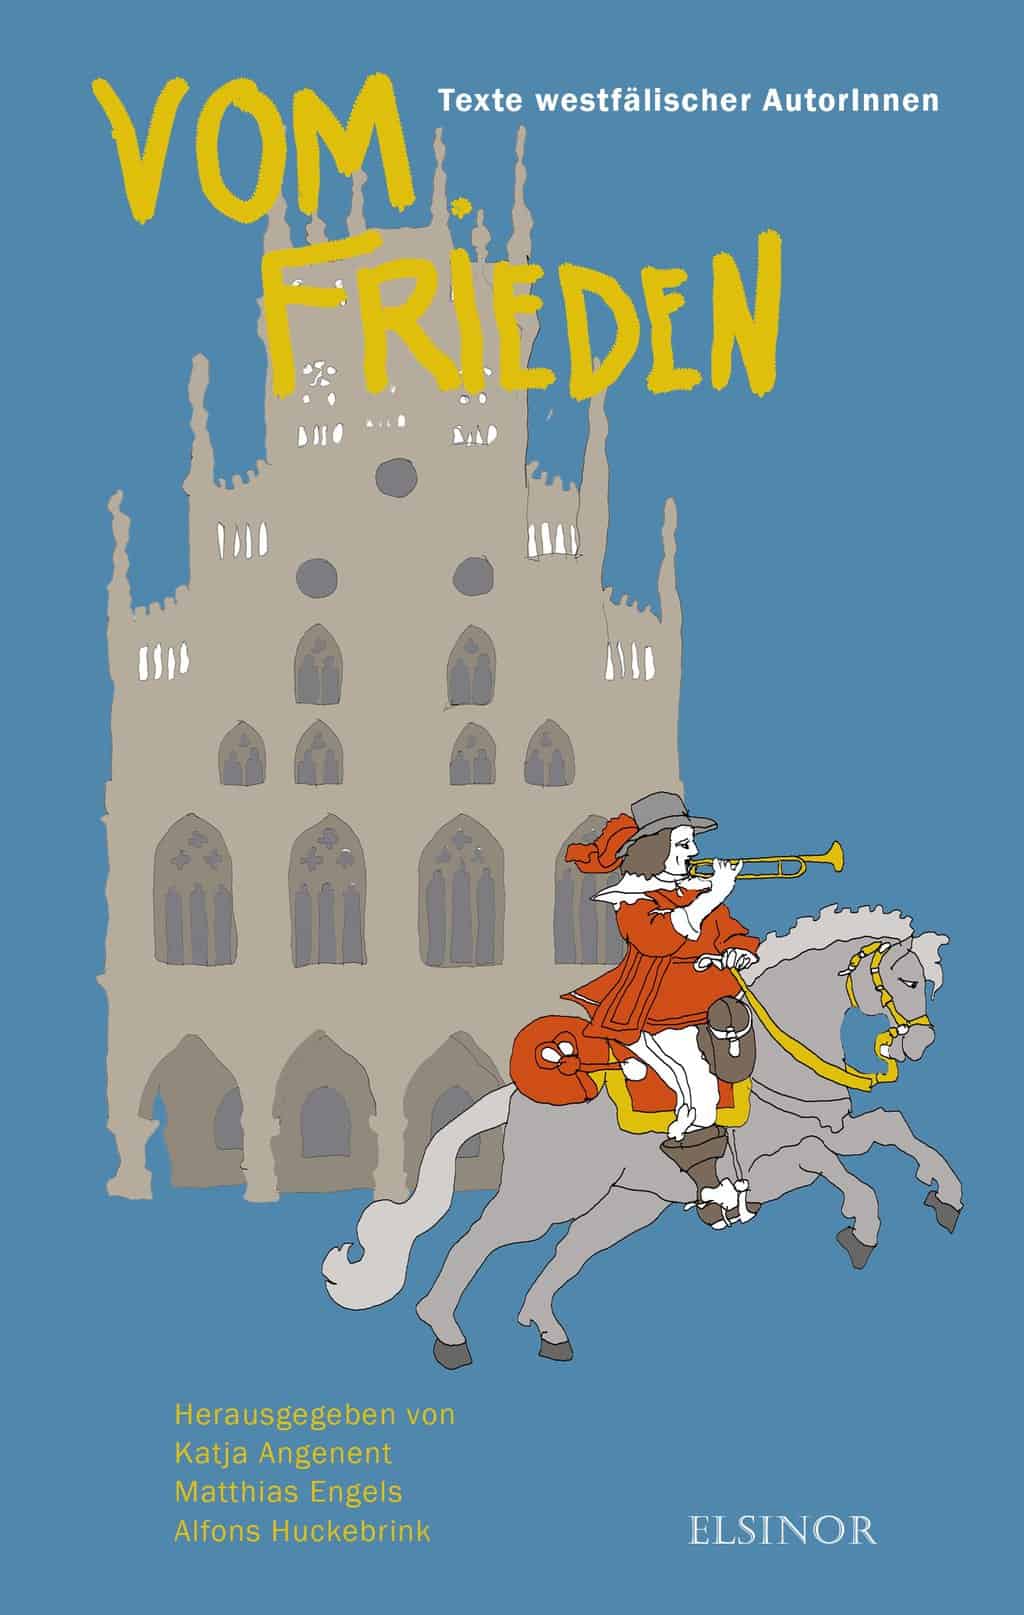 Cover des Buches "Vom Frieden. Texte westfälischer AutorInnen" aus dem Elsinor Verlag